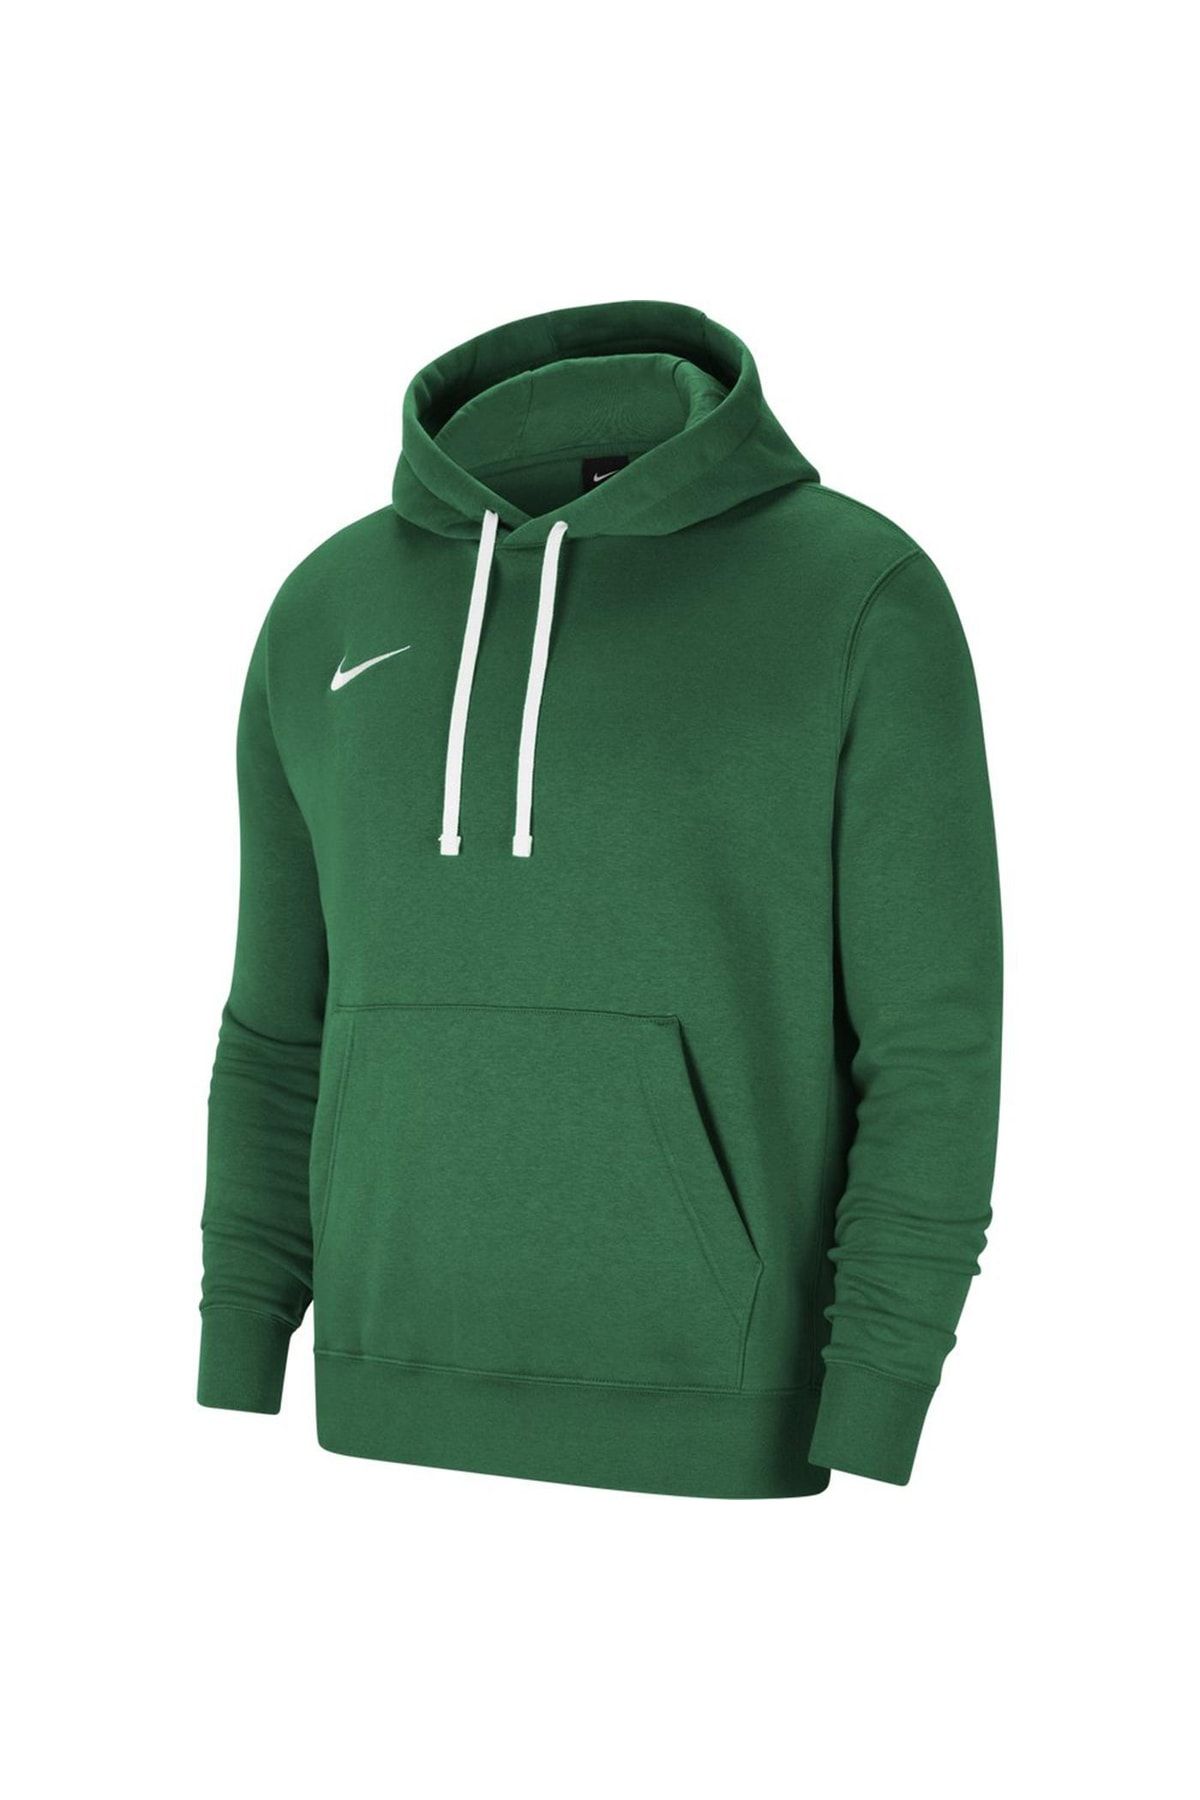 Nike Park Hoodie Yeşil Erkek Kapüşonlu Sweatshirt - Cw6894-302